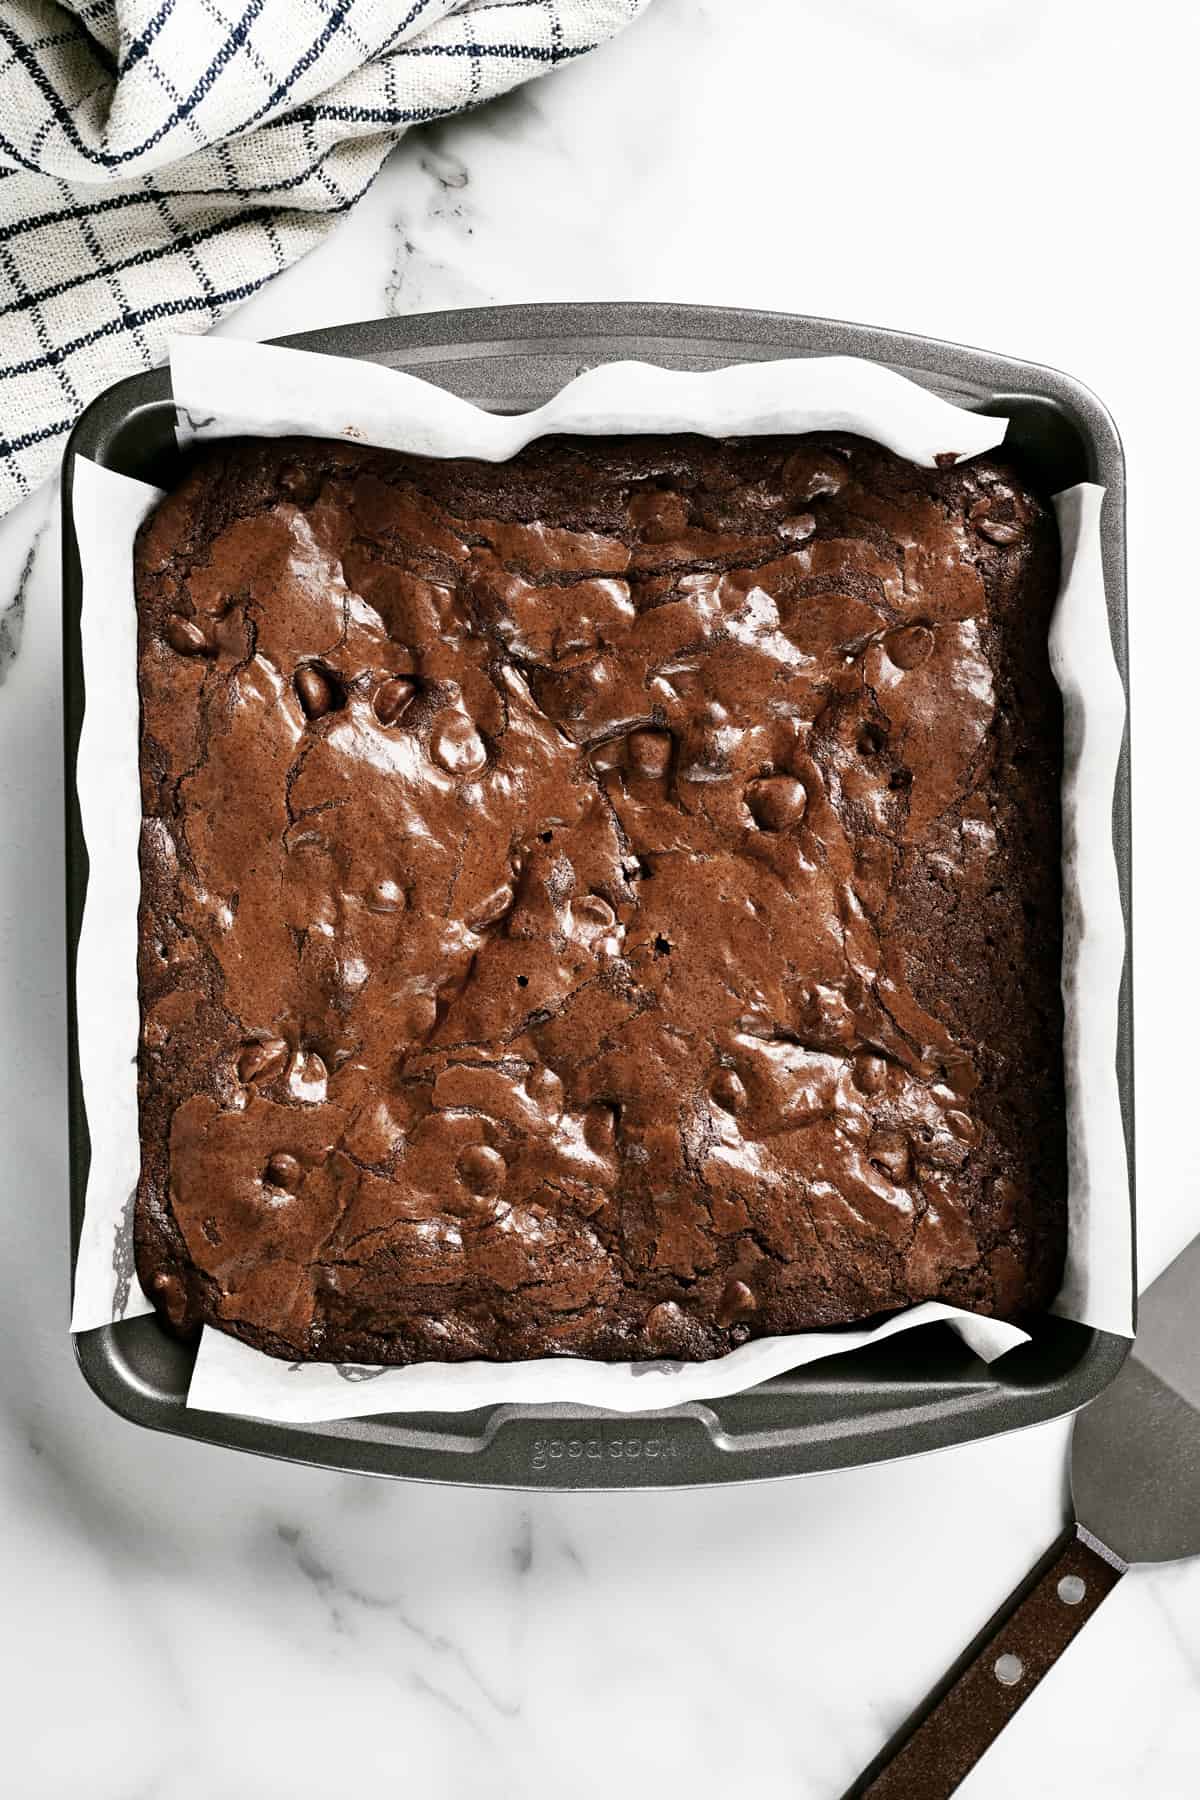 homemade brownies in a pan.